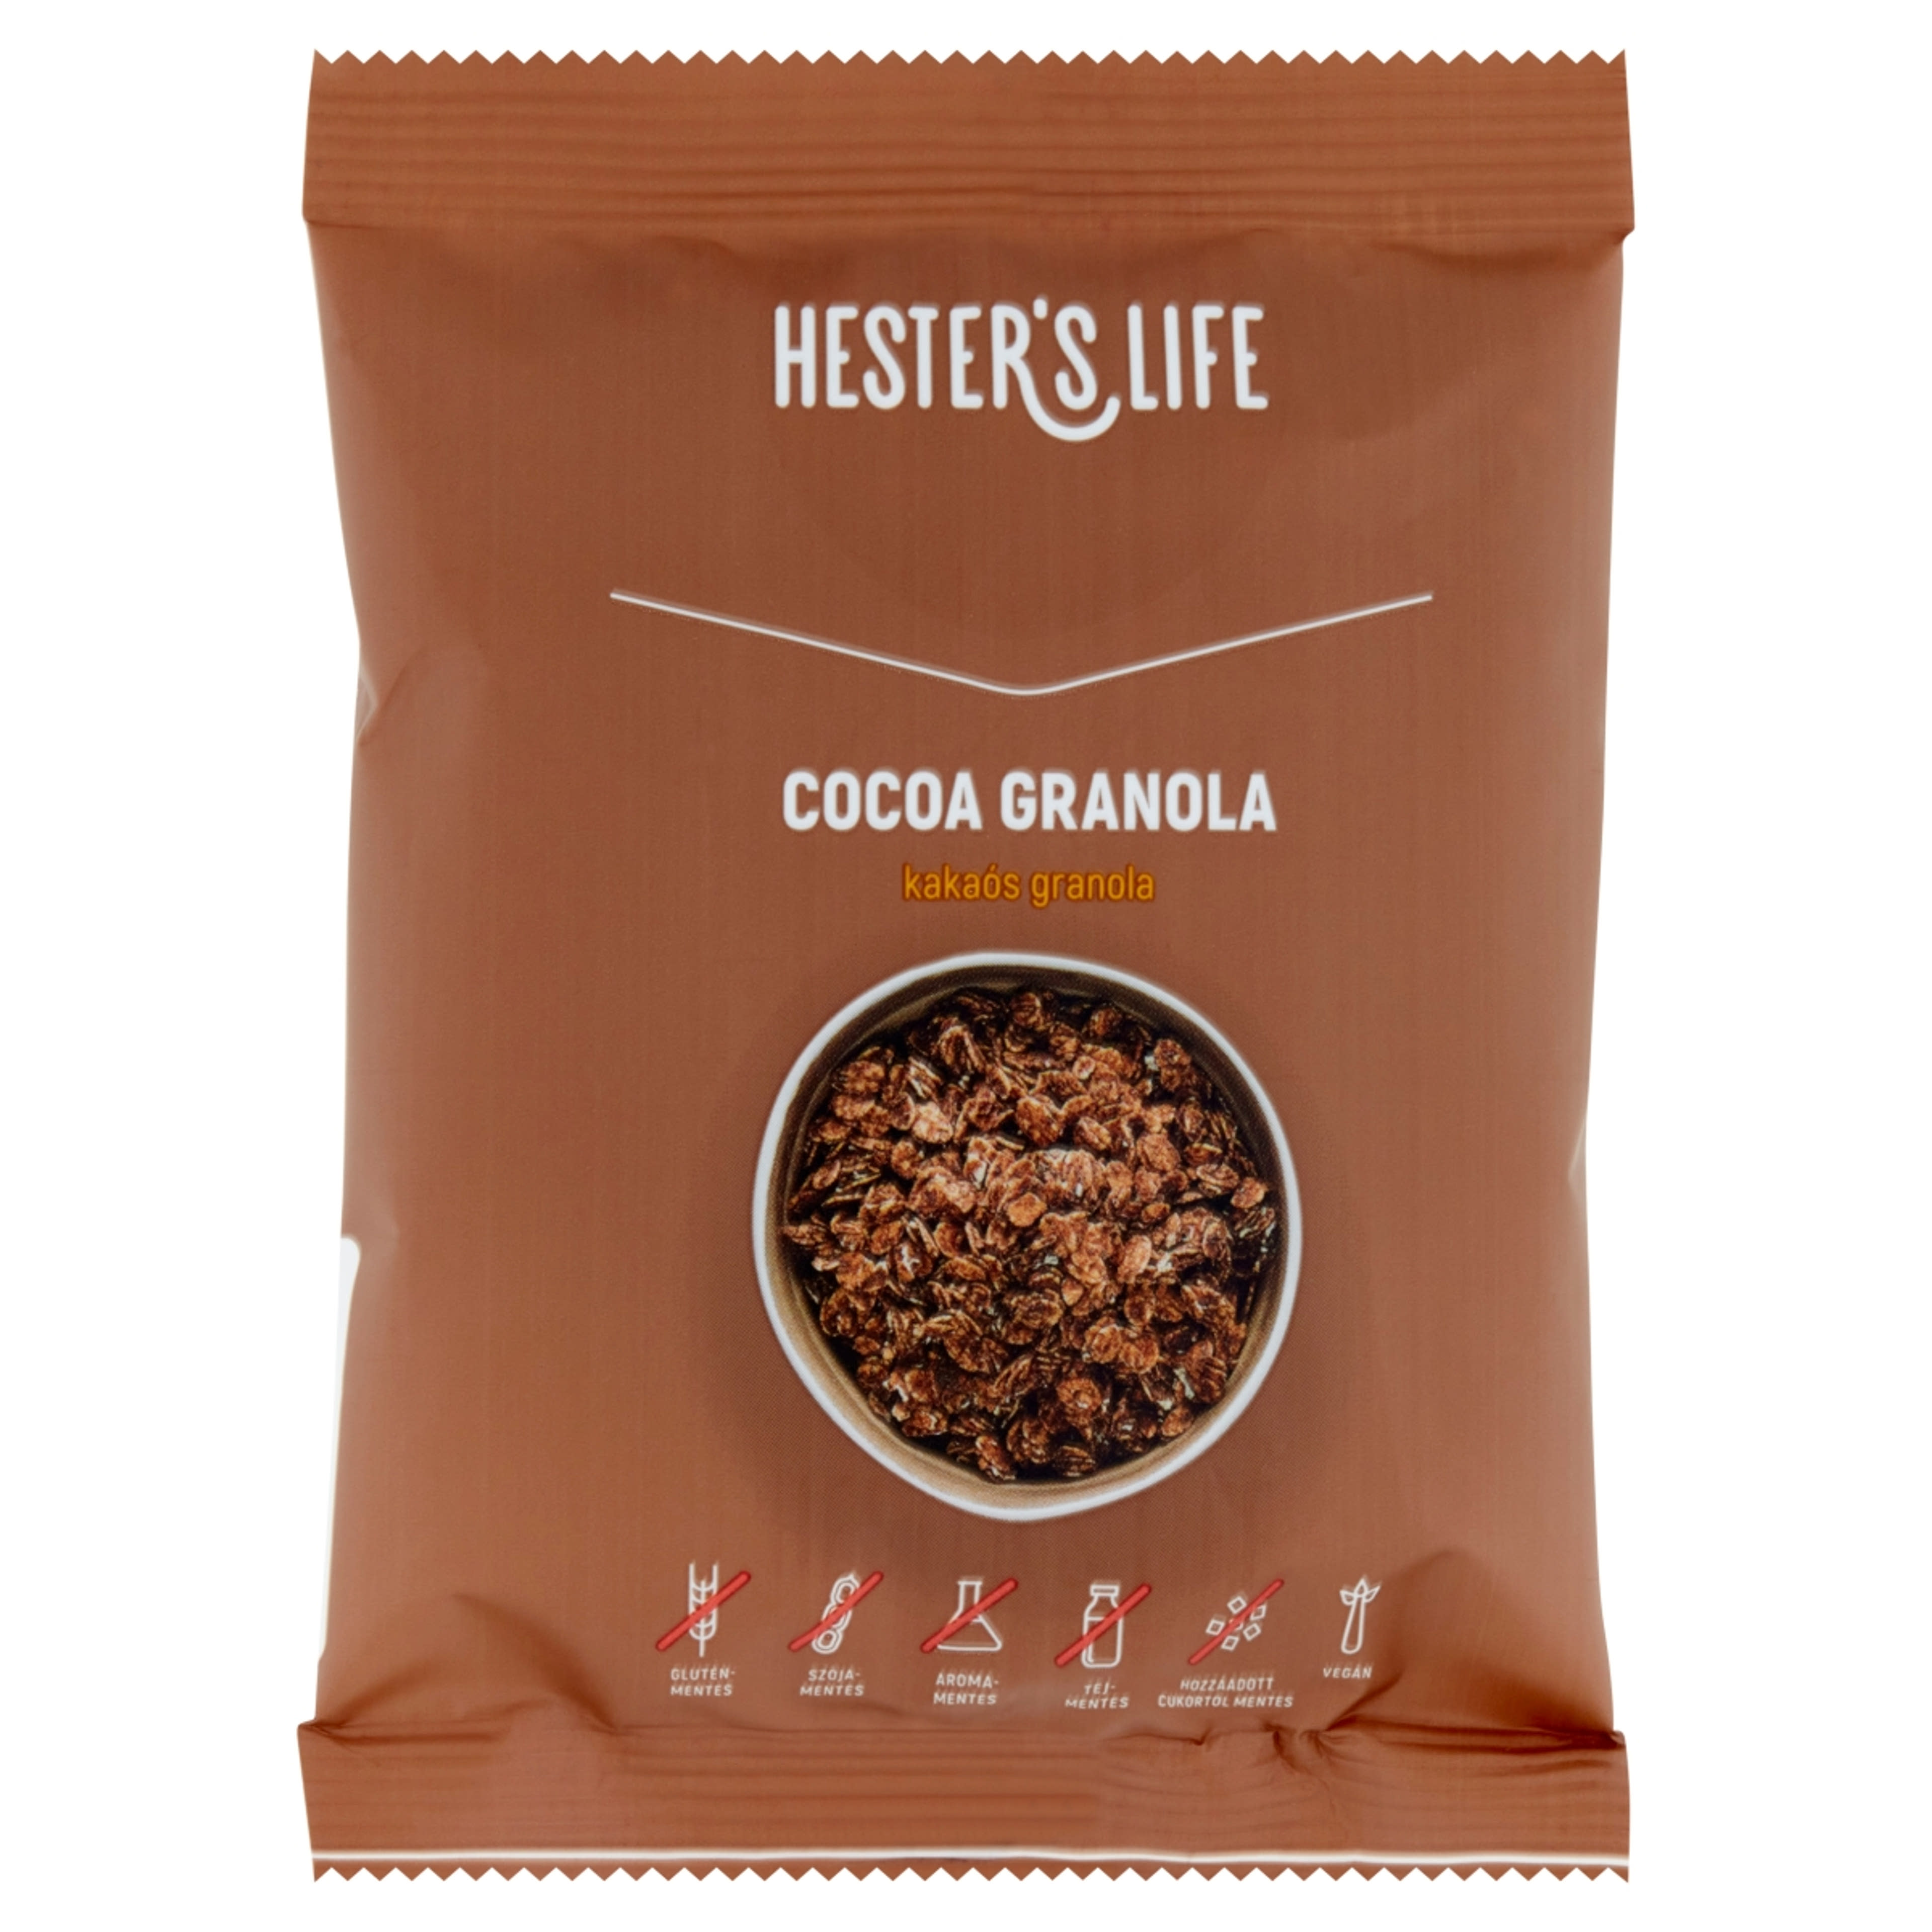 Hester's life cocoa granola - 60 g